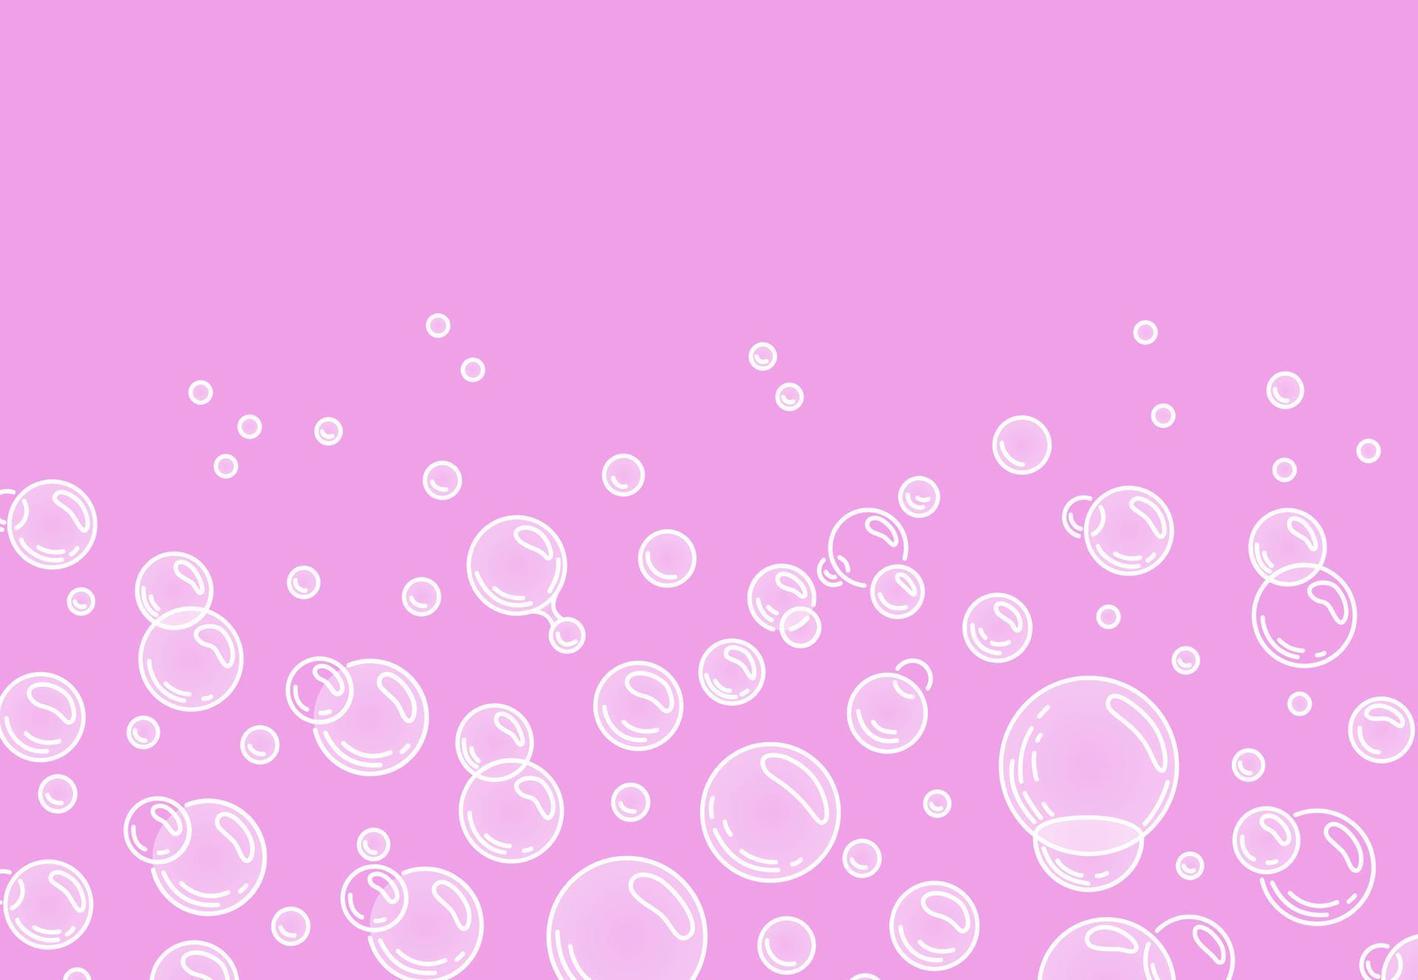 bolhas em um fundo rosa background.fizzing bolhas de ar ou água sobre fundo branco. brilhos efervescentes. Chiclete. ilustração vetorial dos desenhos animados. ilustração vetorial vetor